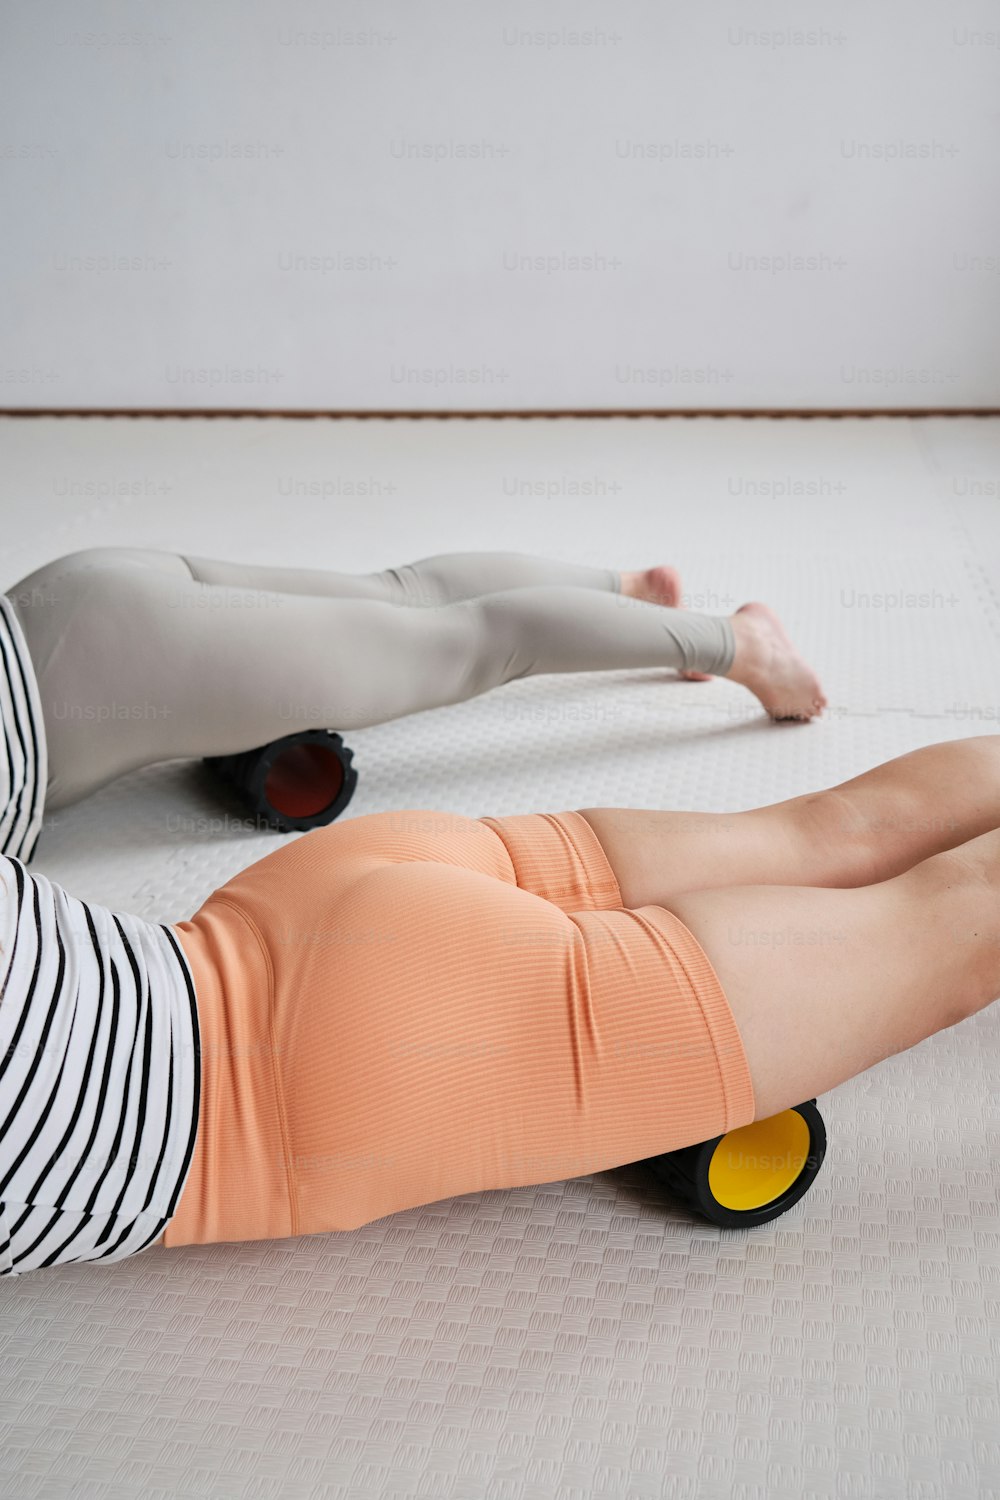 une femme allongée sur un matelas sur un plancher